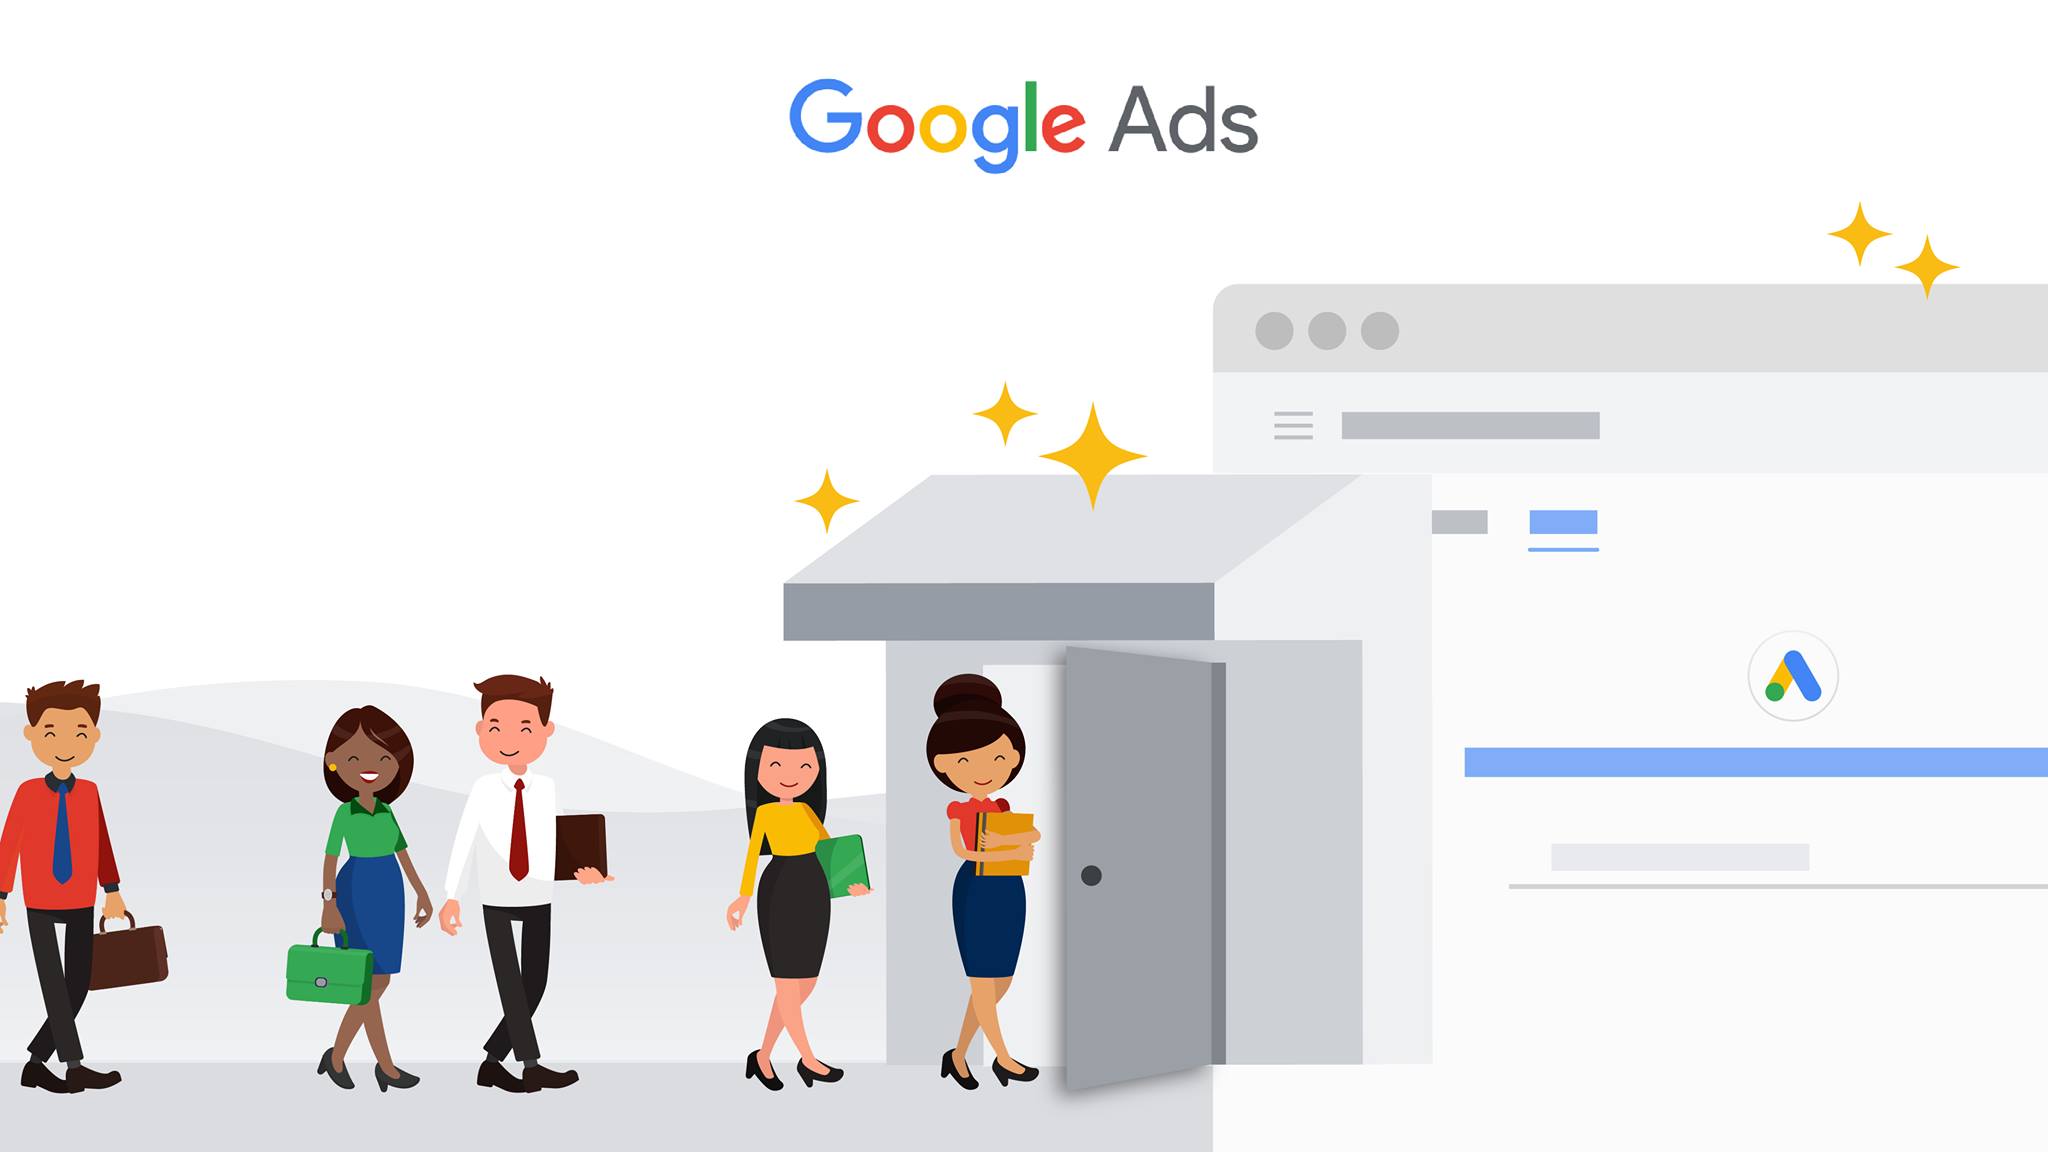 Google ADS,Pubblicità online,Campagne Pubblicitarie,Esperienza,Competenze,Risultati,Marketing,Pubblicità su Google,Ottimizzazione,Conversioni